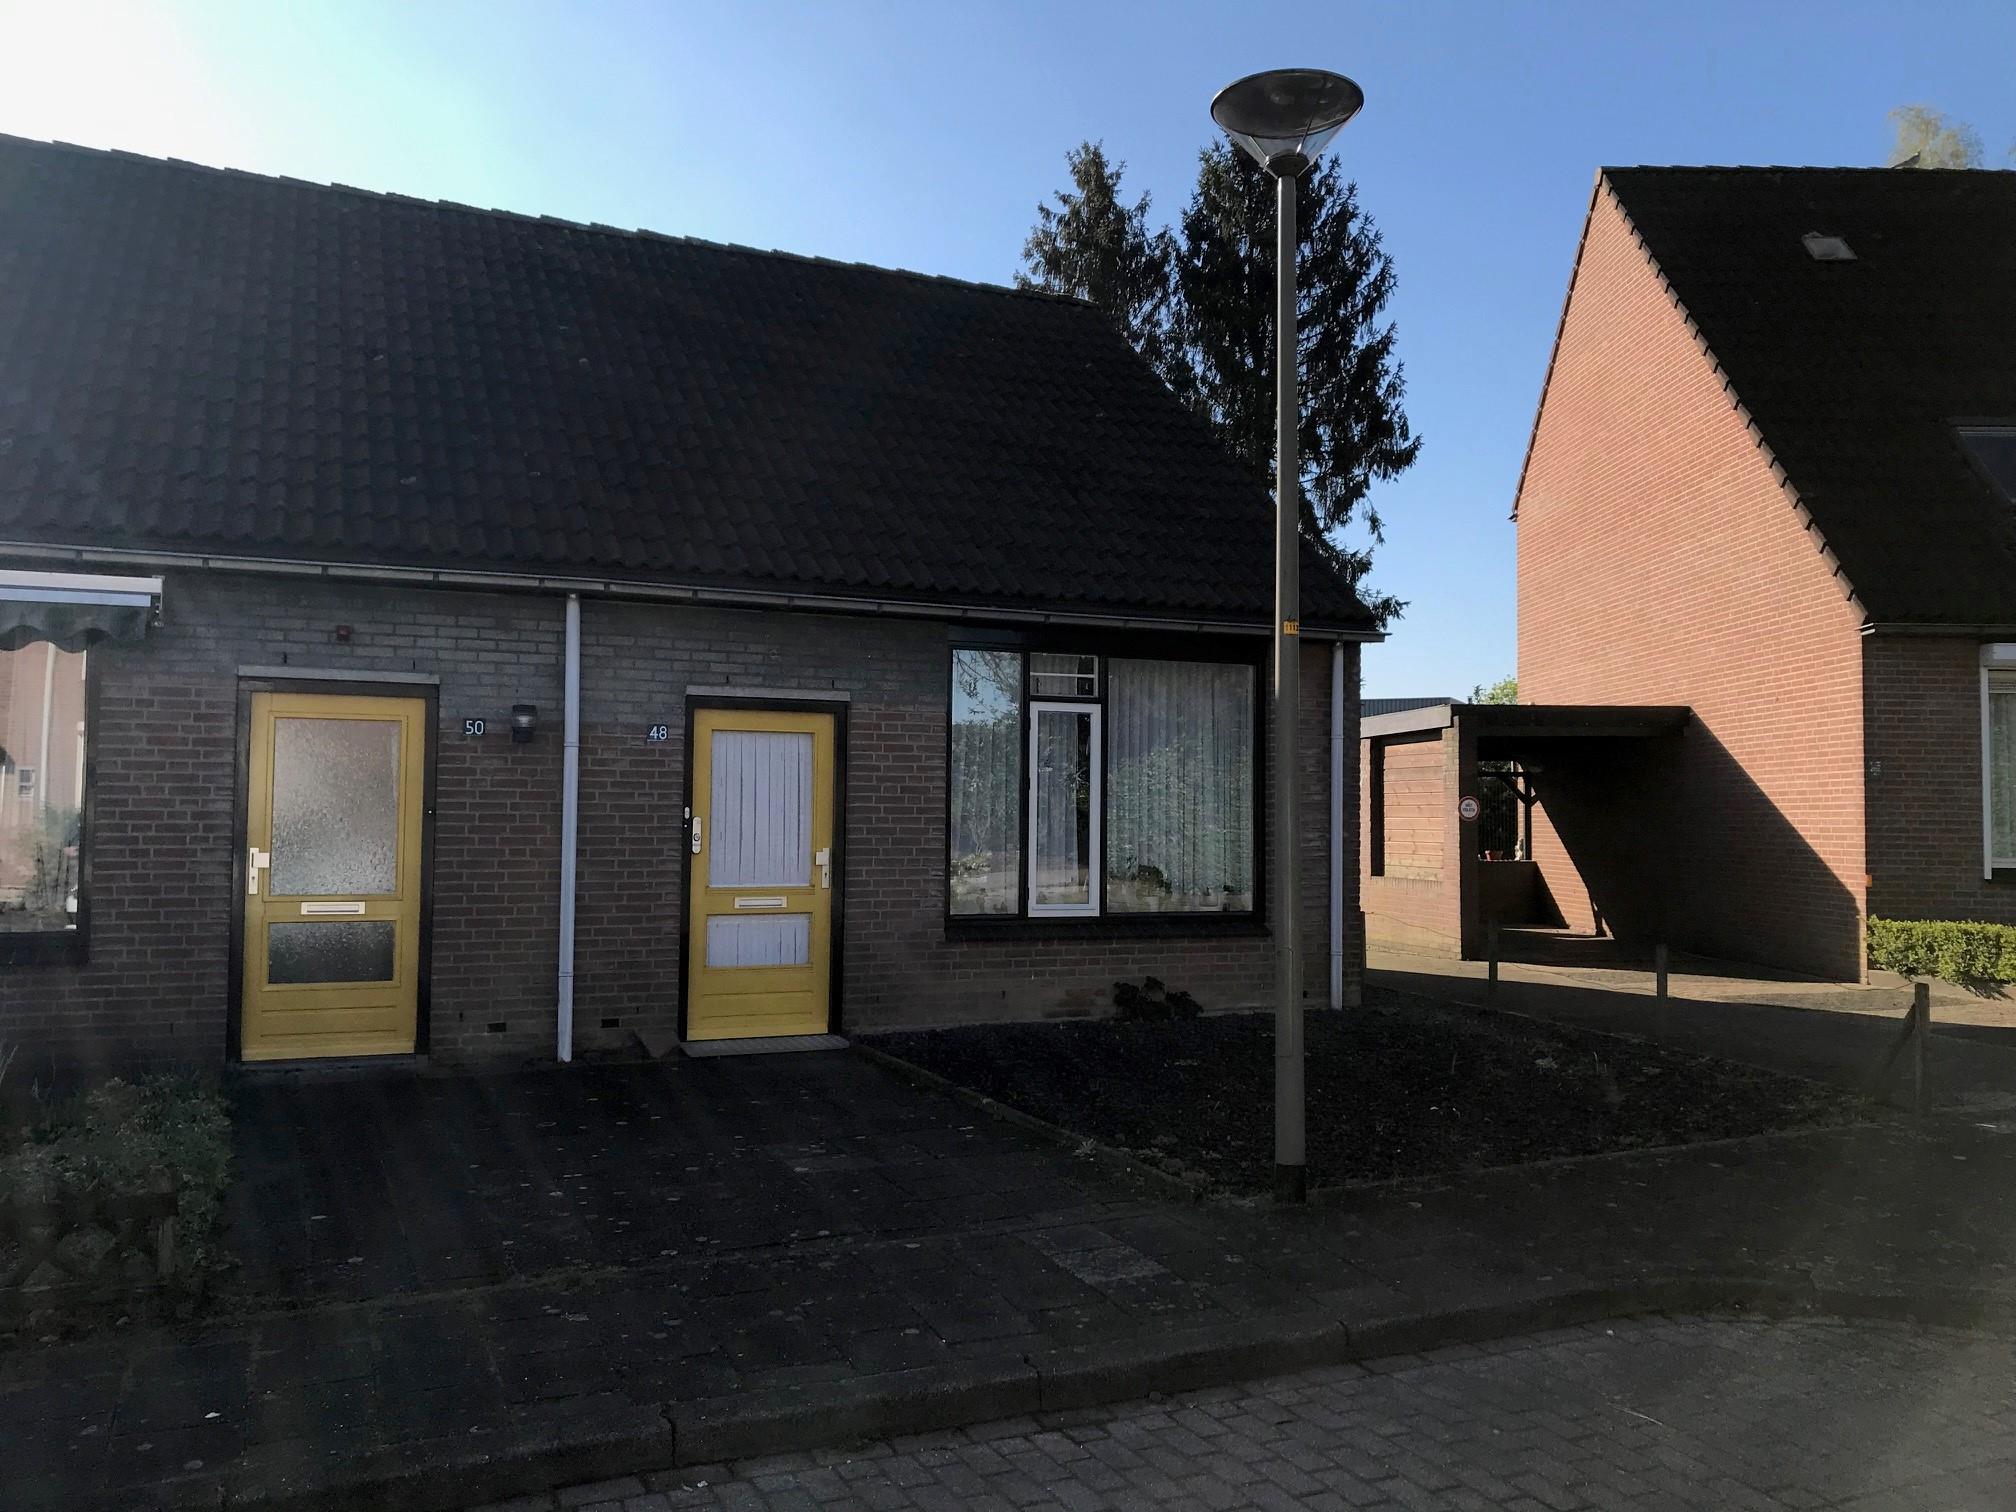 Heer Zegerstraat 48, 6561 BT Groesbeek, Nederland